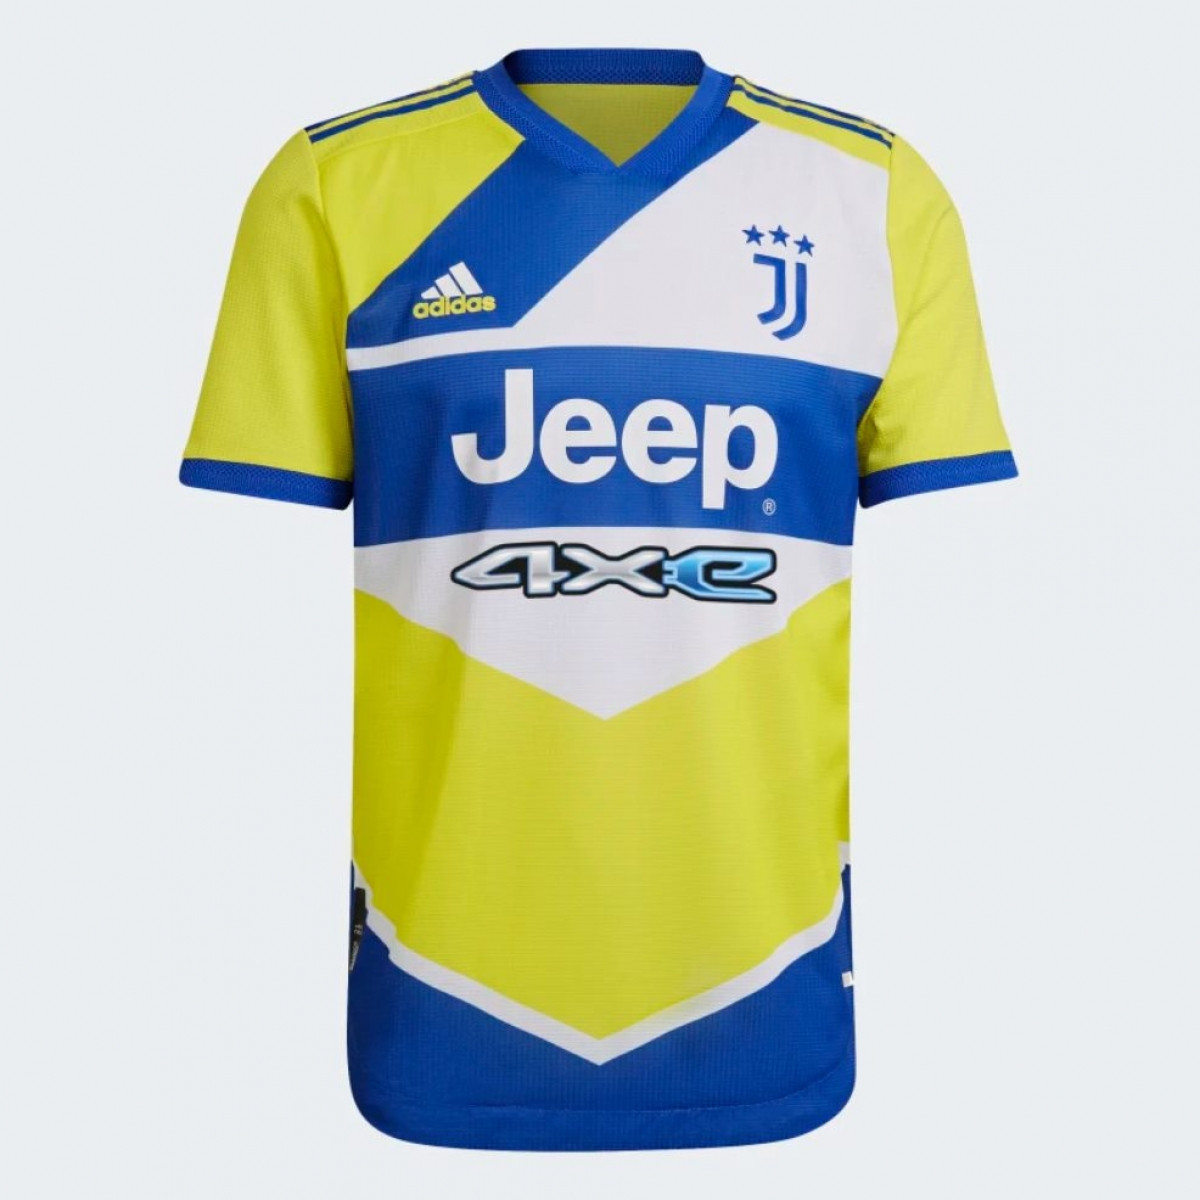 Mẫu áo đấu mới của Juventus khiến cư dân mạng liên tưởng tới 1 quả bóng chuyền hoặc 1 vỏ hộp bơ sữa.